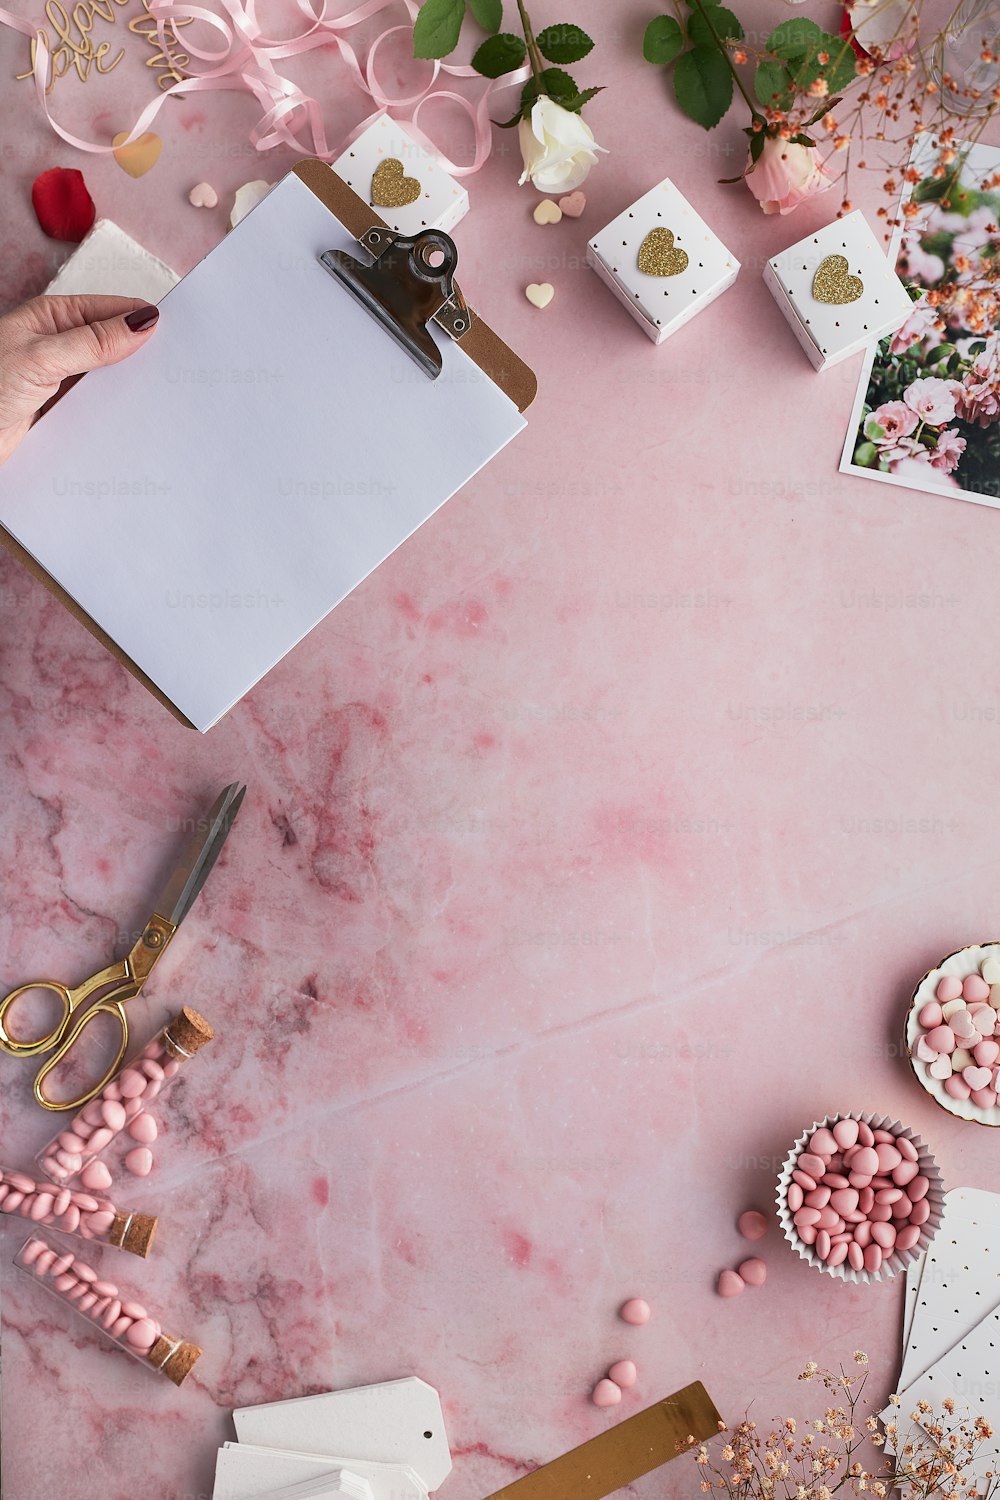 Un tavolo rosa sormontato da un sacco di caramelle e un blocco note